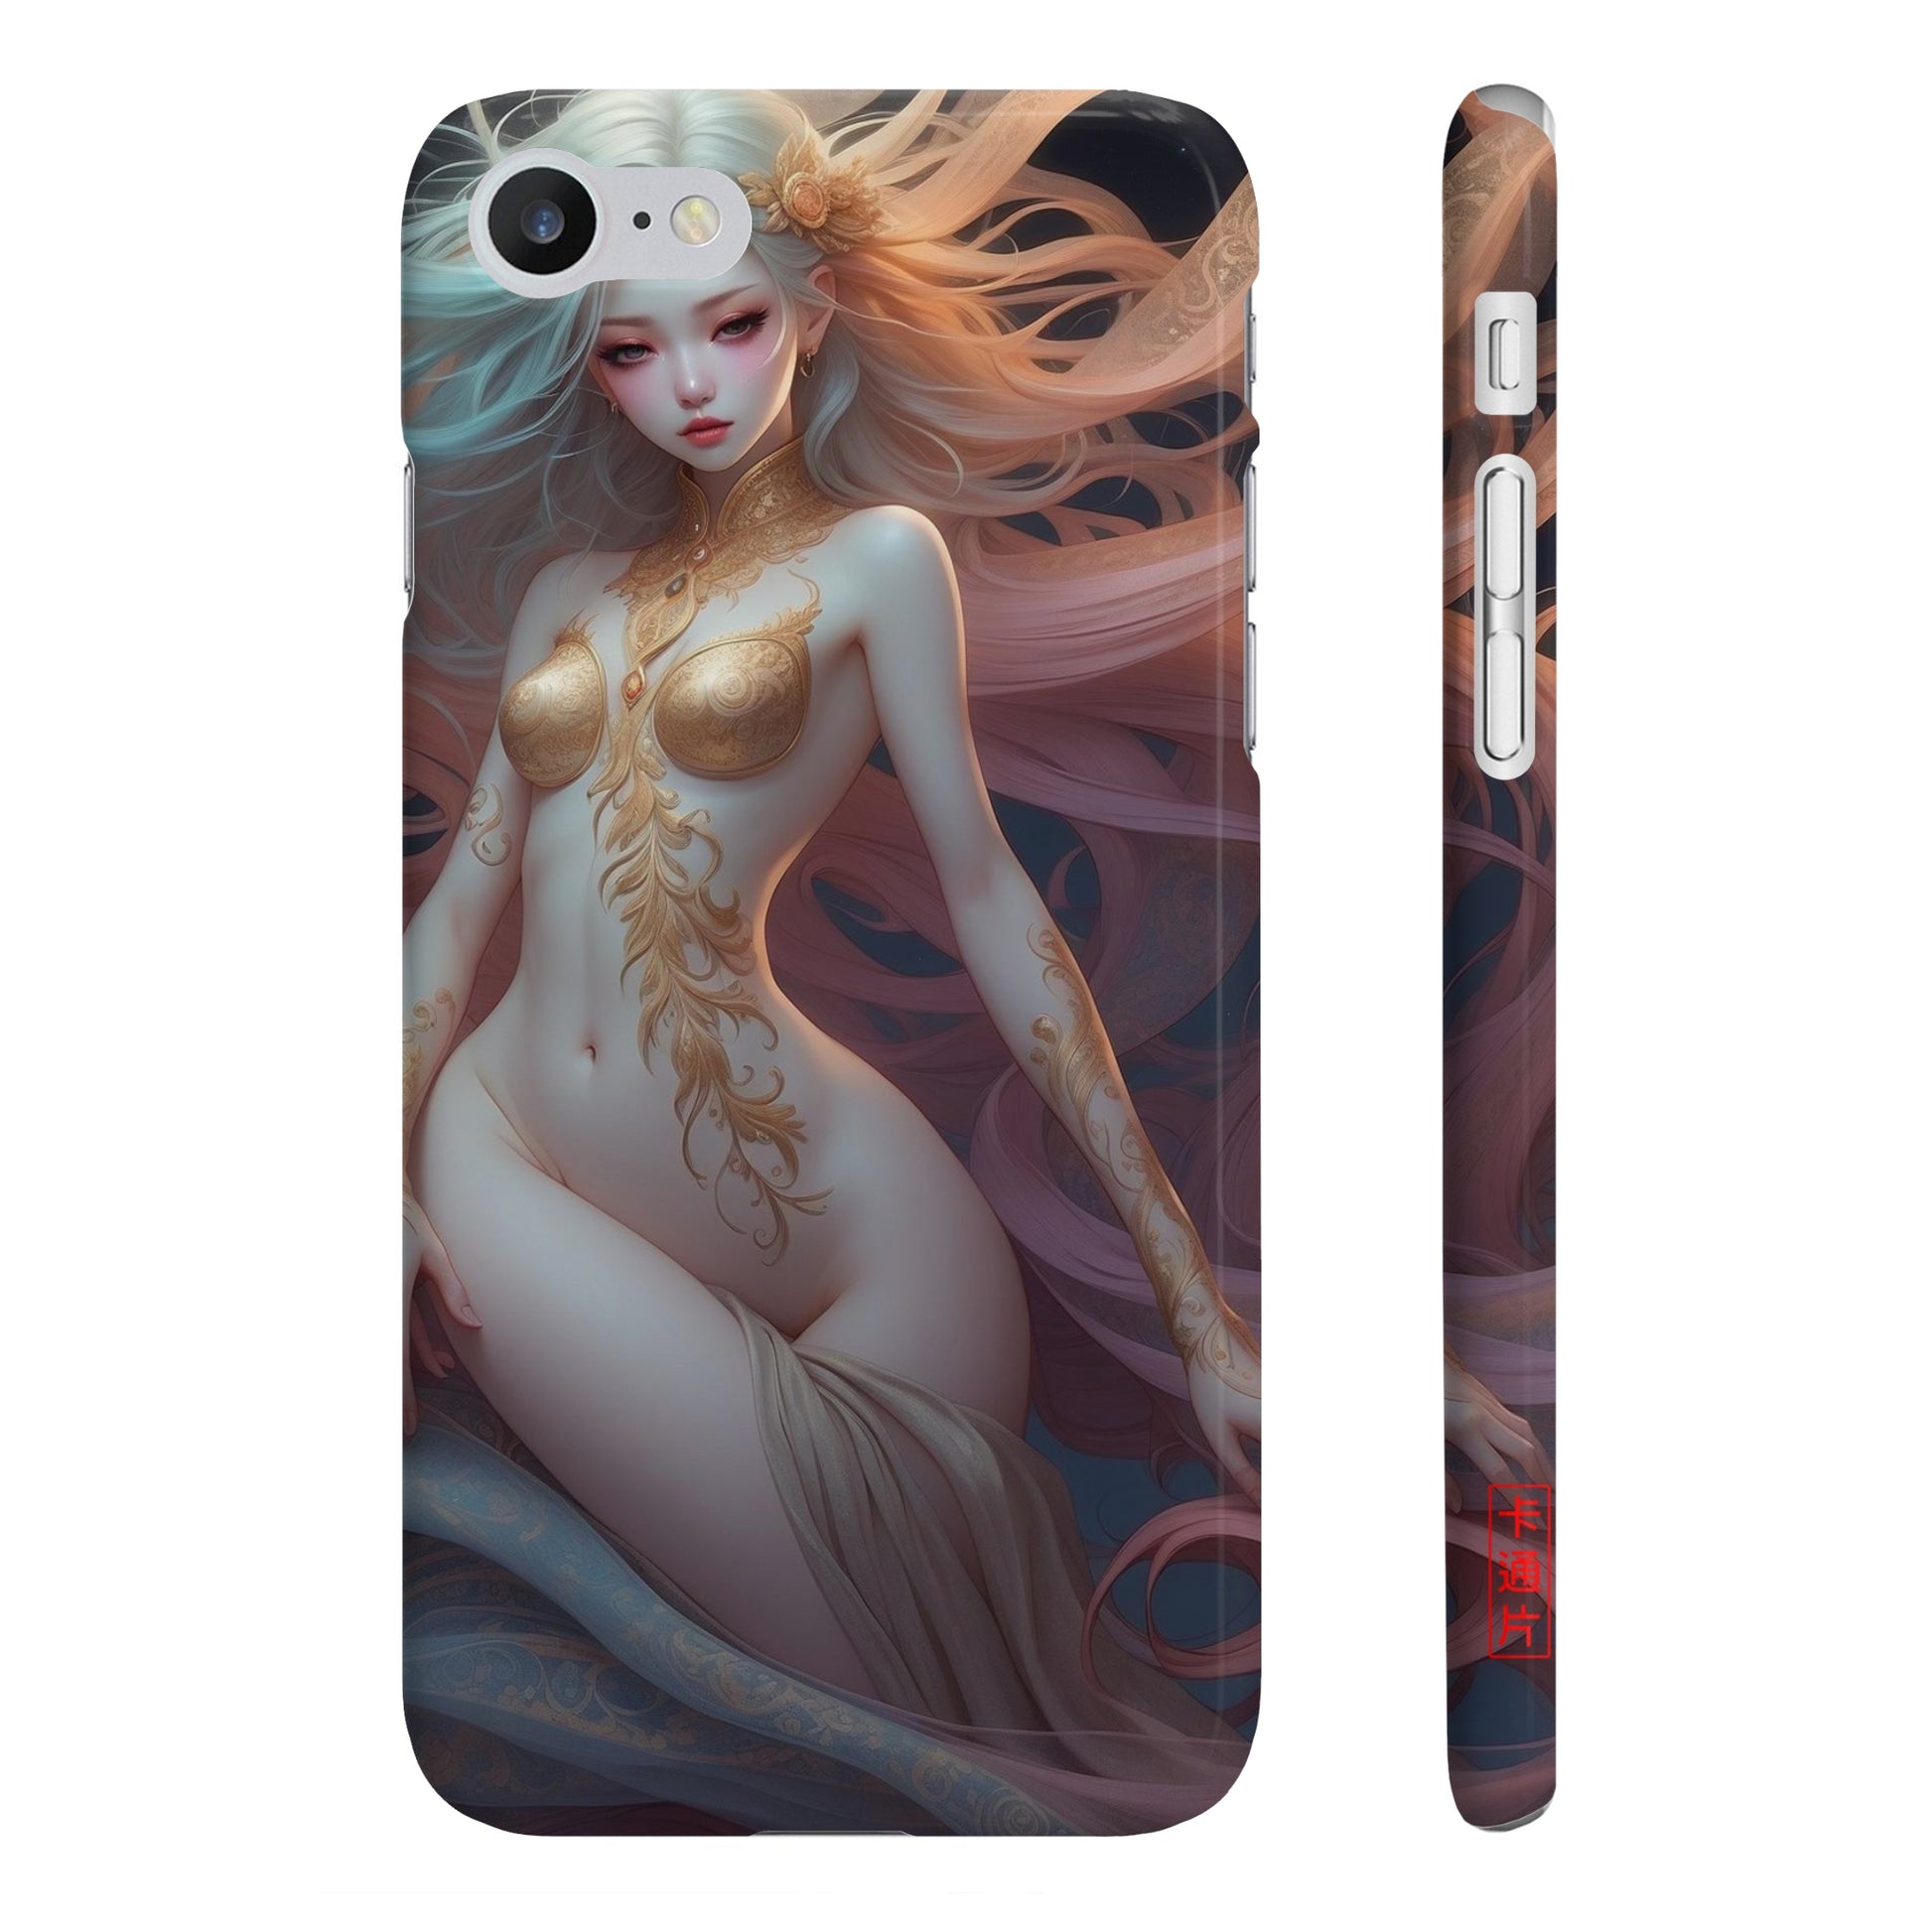 Kǎtōng Piàn - Mermaid Collection - 008 - Slim Phone Cases Printify